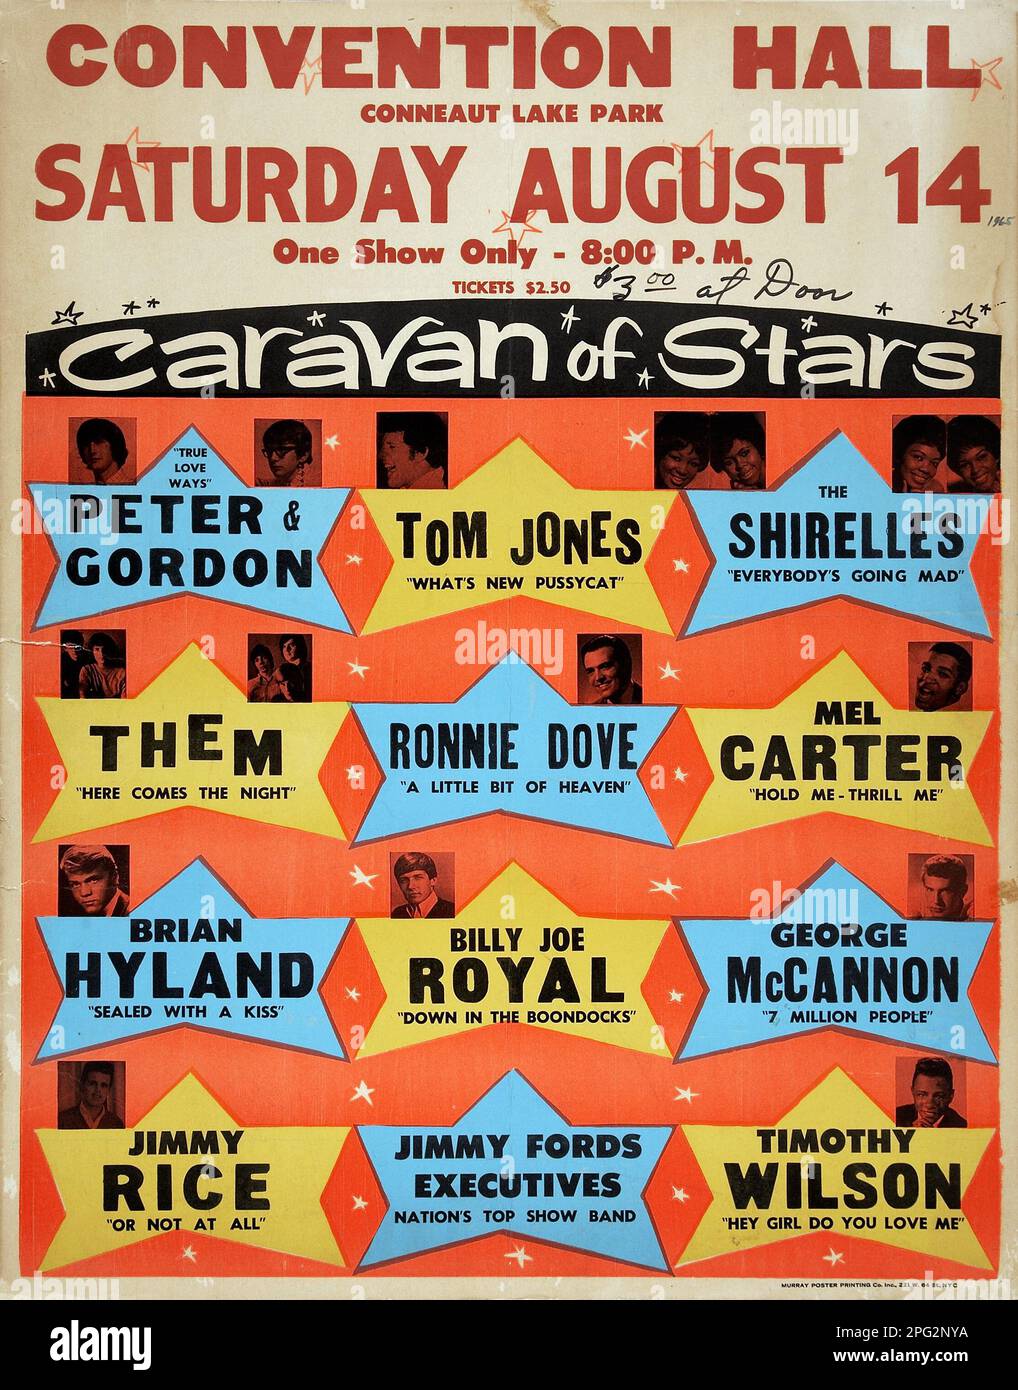 Caravane de stars avec Peter et Gordon , Tom Jones, Brian Hyland, Convention Hall Conneaut Lake Park - affiche de concert d'époque (1965) Banque D'Images